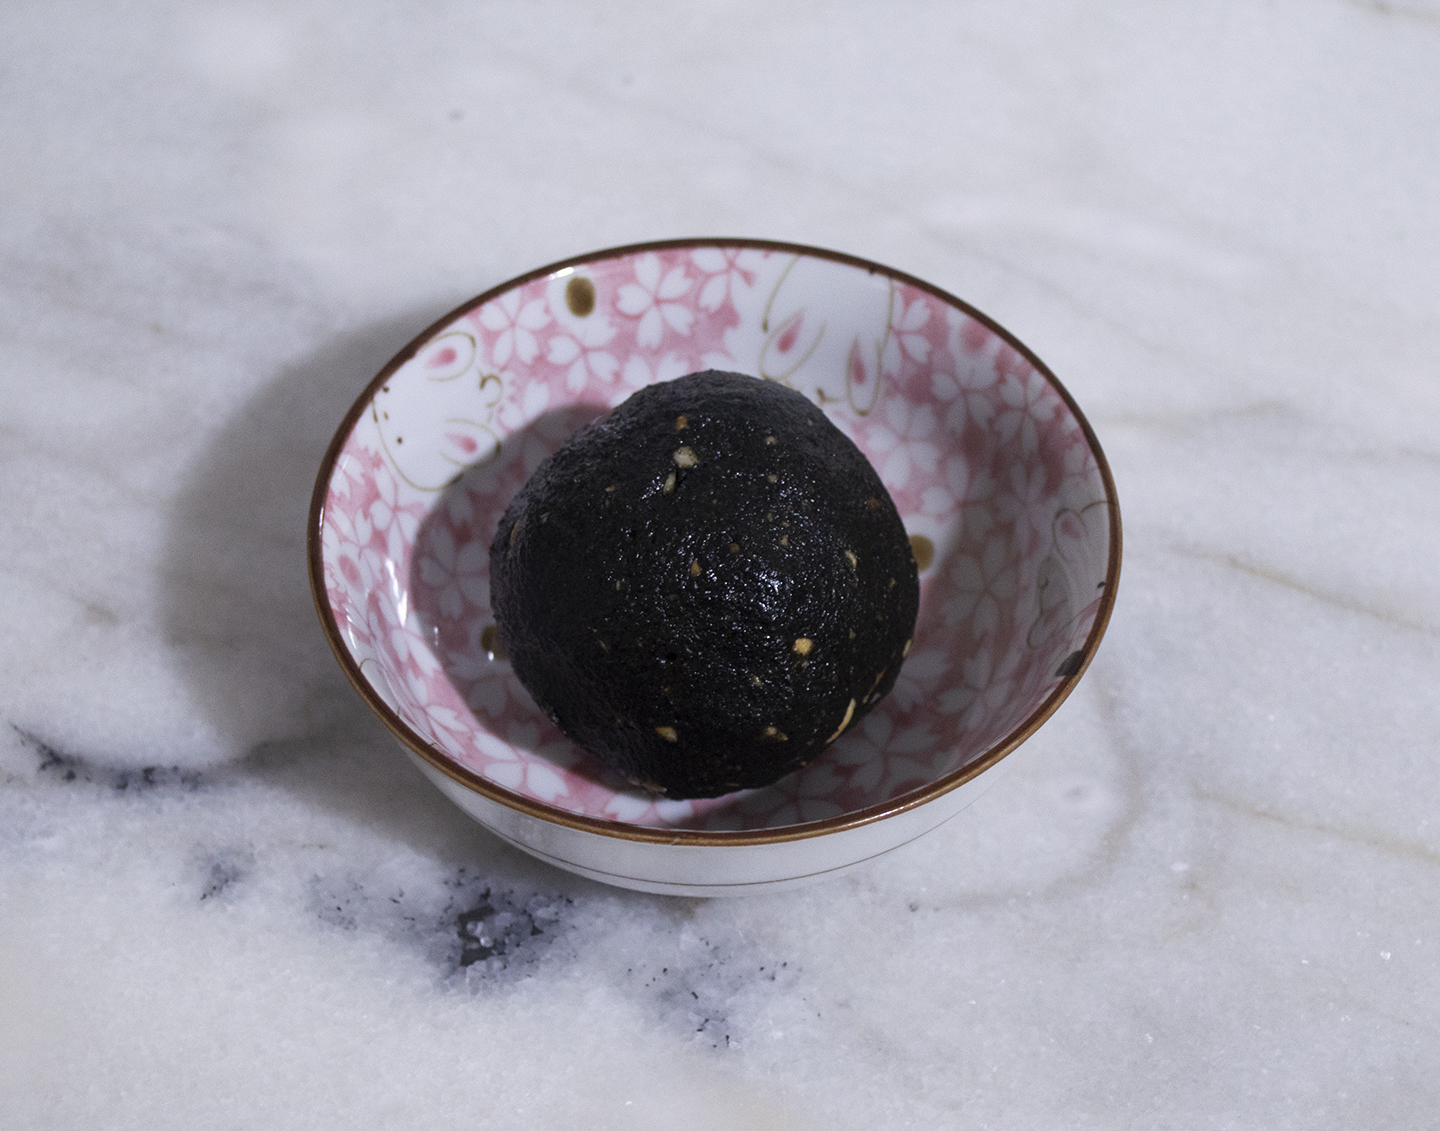 Hēi Zhīma Huāshēng Xiàn (黑芝麻花生馅) - Black Sesame Peanut Filling for Confections